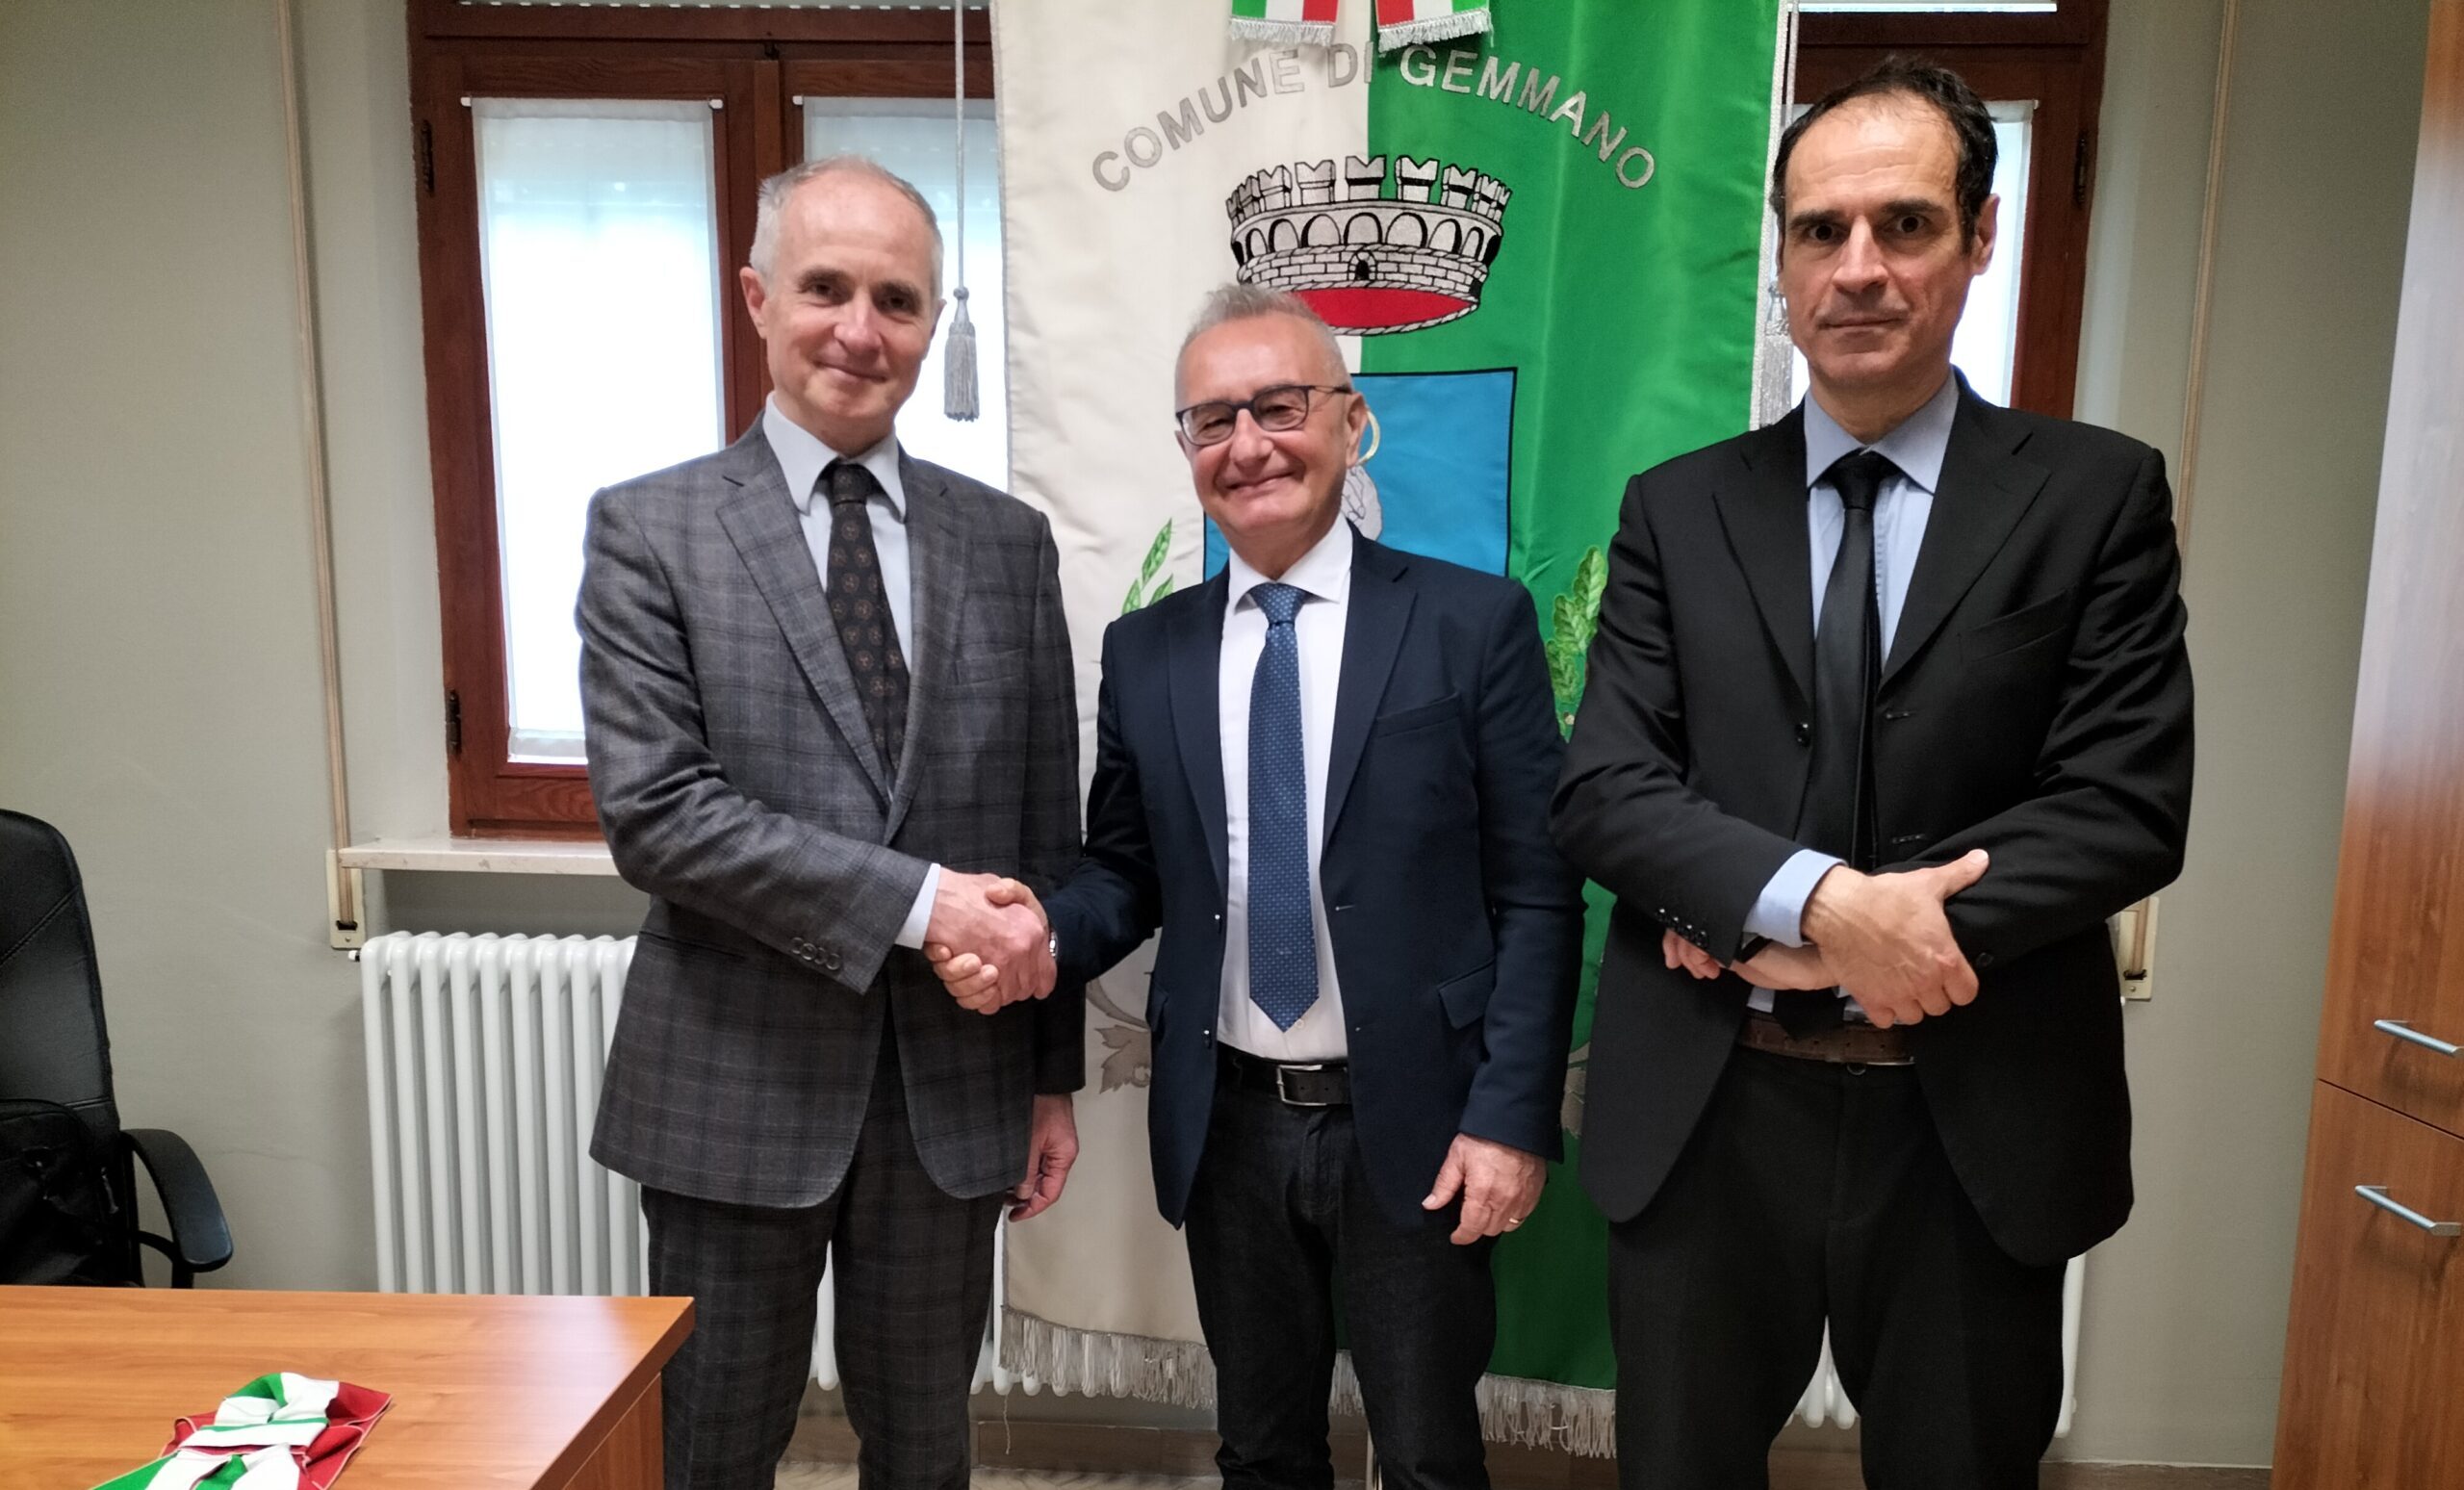 L’ambasciatore d’Italia a San Marino e il Comites in visita al comune di Gemmano